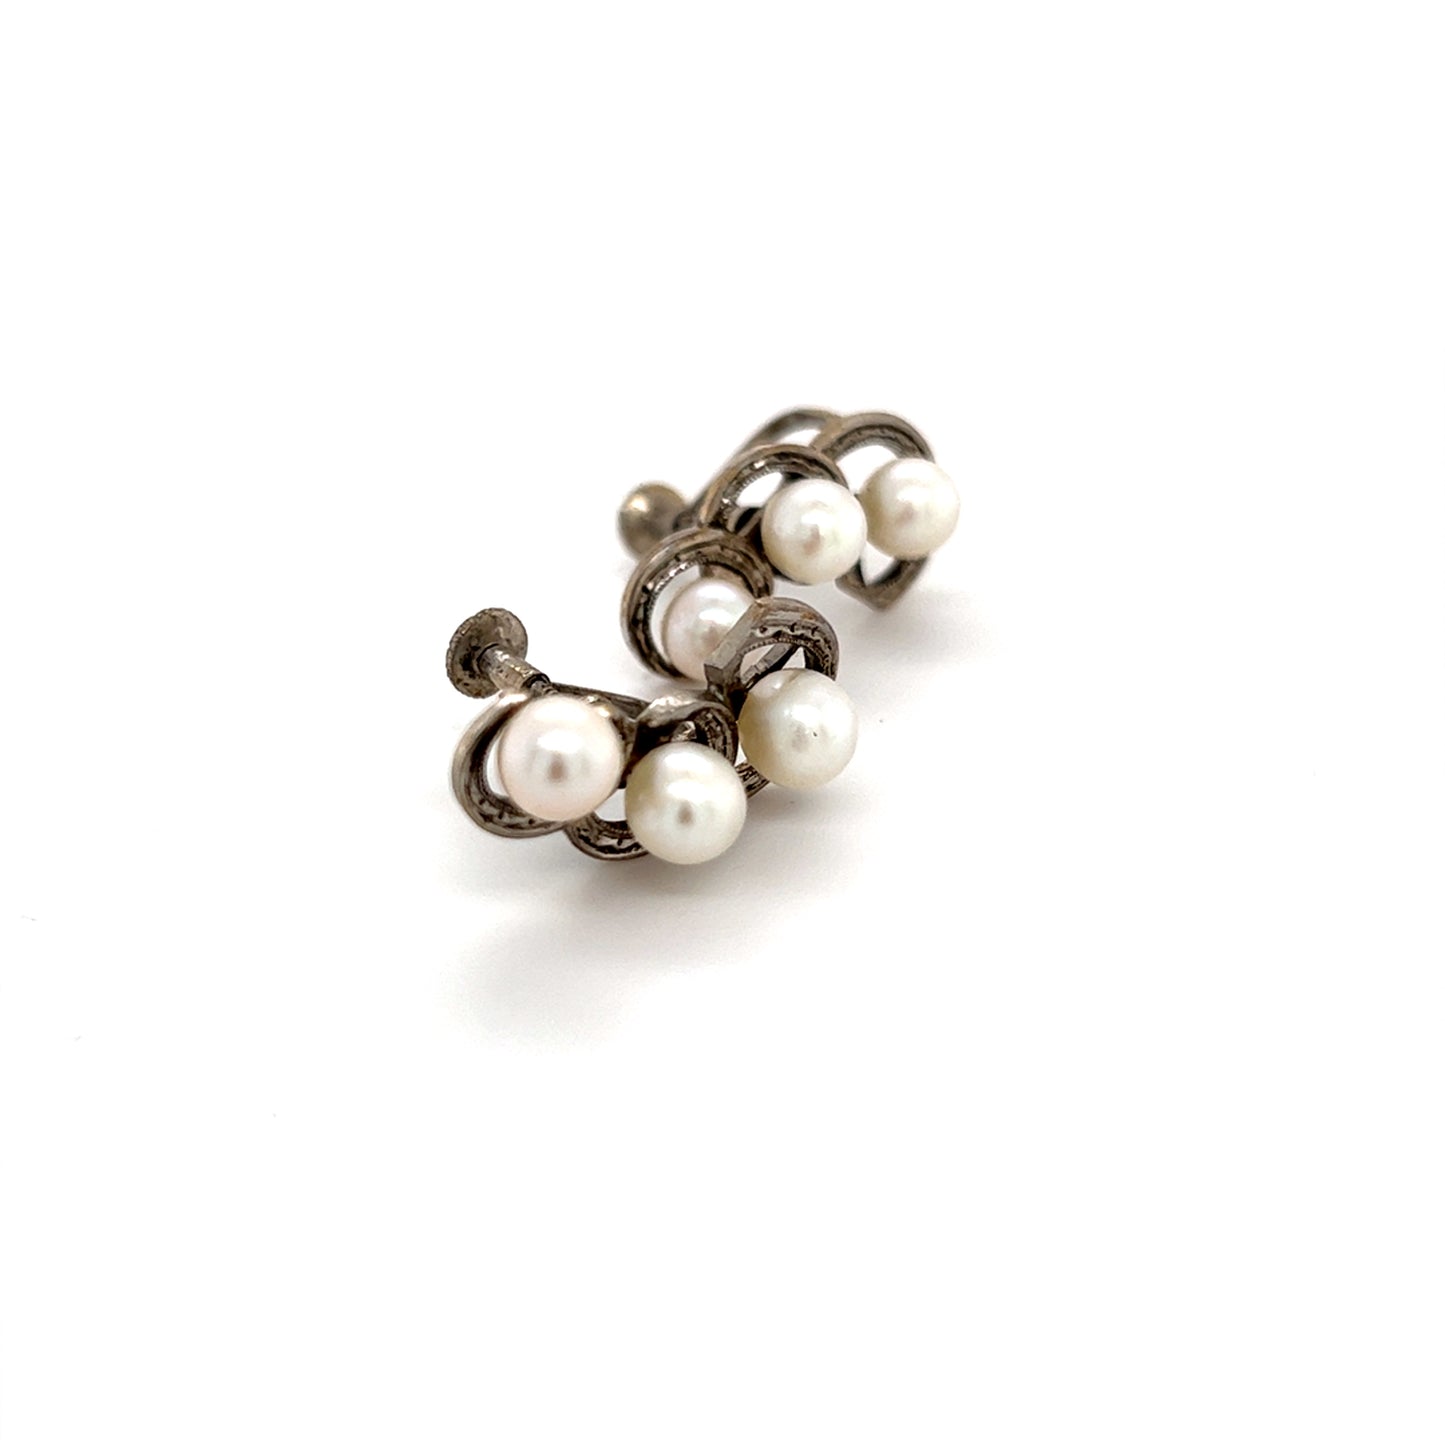 Mikimoto Estate Akoya Pearl Earrings Sterling Silver 5.5 mm 5.1 Grams M254 - Certified Fine Jewelry